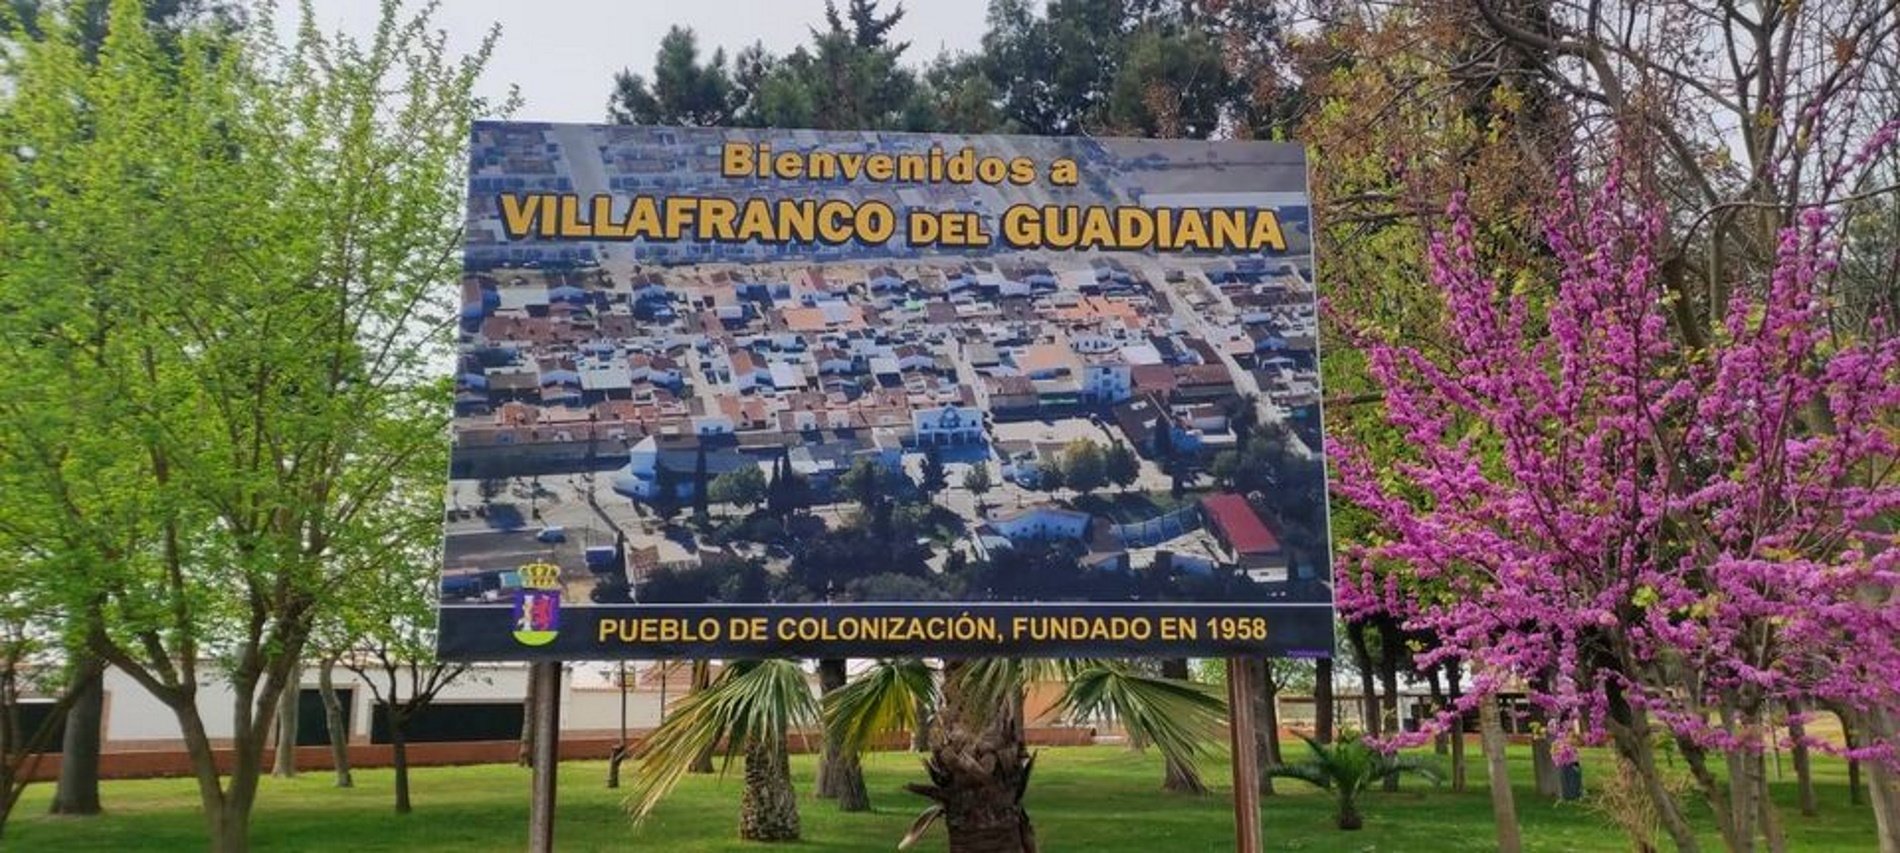 7 pobles espanyols amb nom franquista celebraran eleccions municipals sense complir la llei de memòria